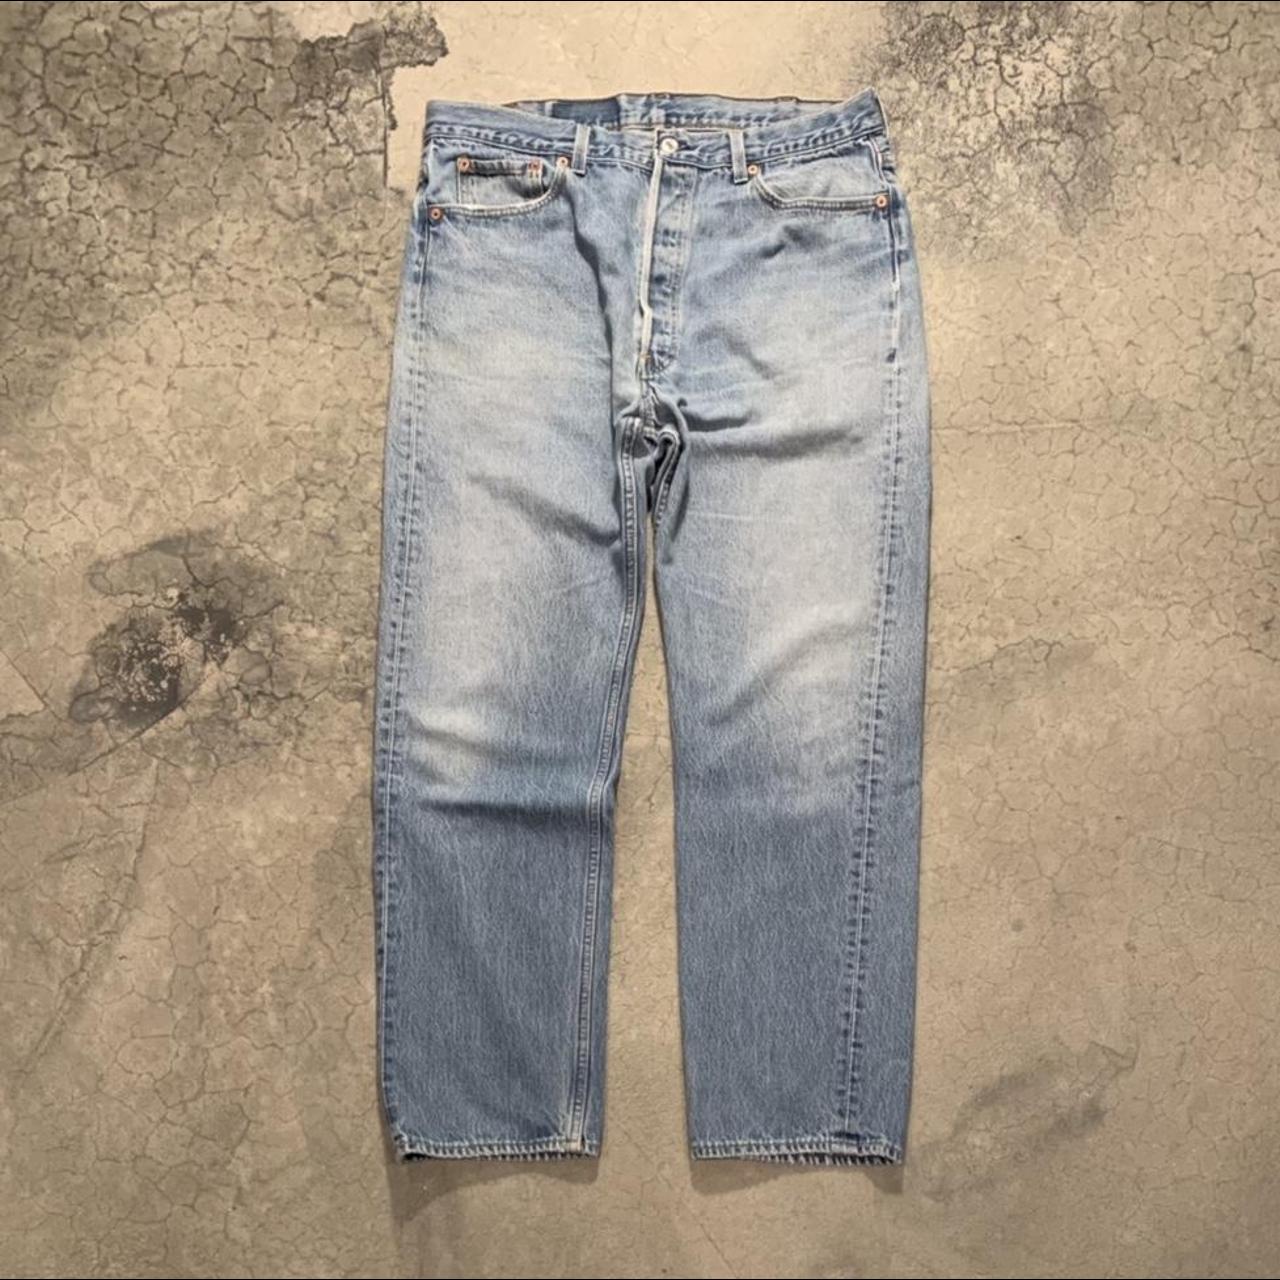 Vintage 90s Levi’s 501 jeans! Men’s 40 (fits 34), 29... - Depop